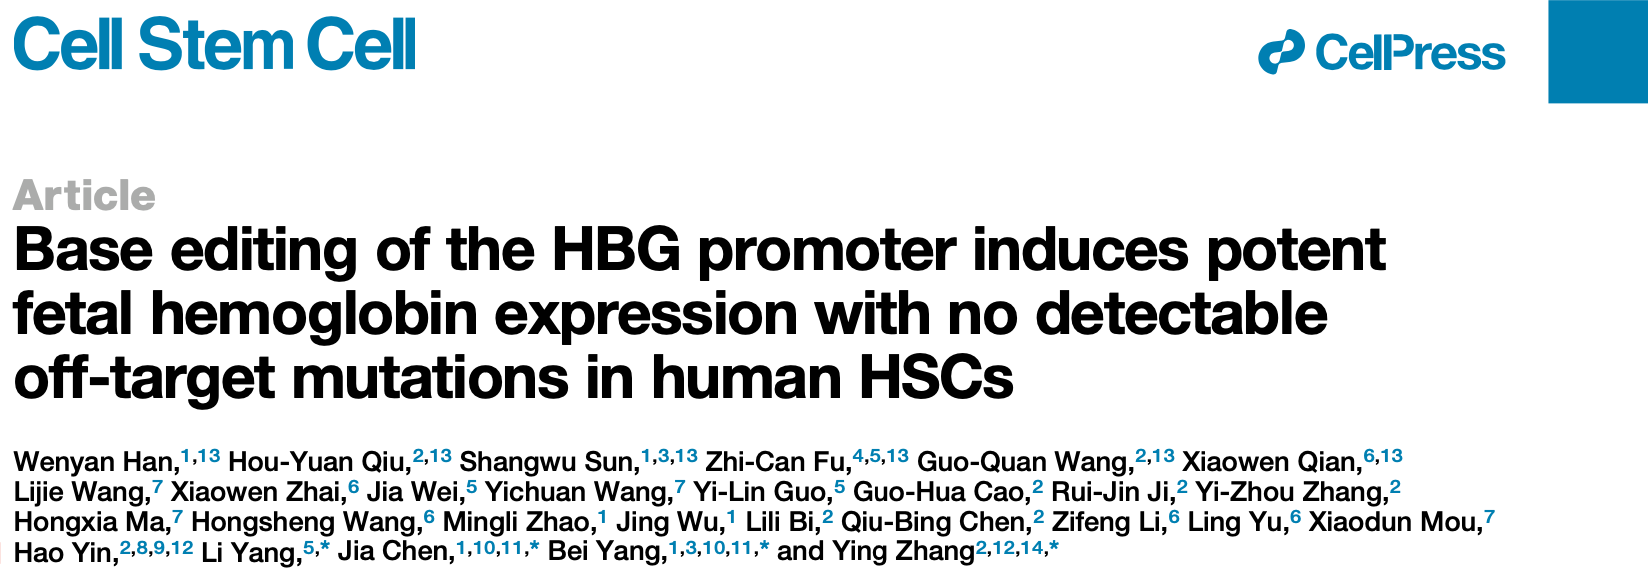 陈佳、杨贝课题组与合作者发表基于变形式碱基编辑器tBE治疗β-血红蛋白病的新策略